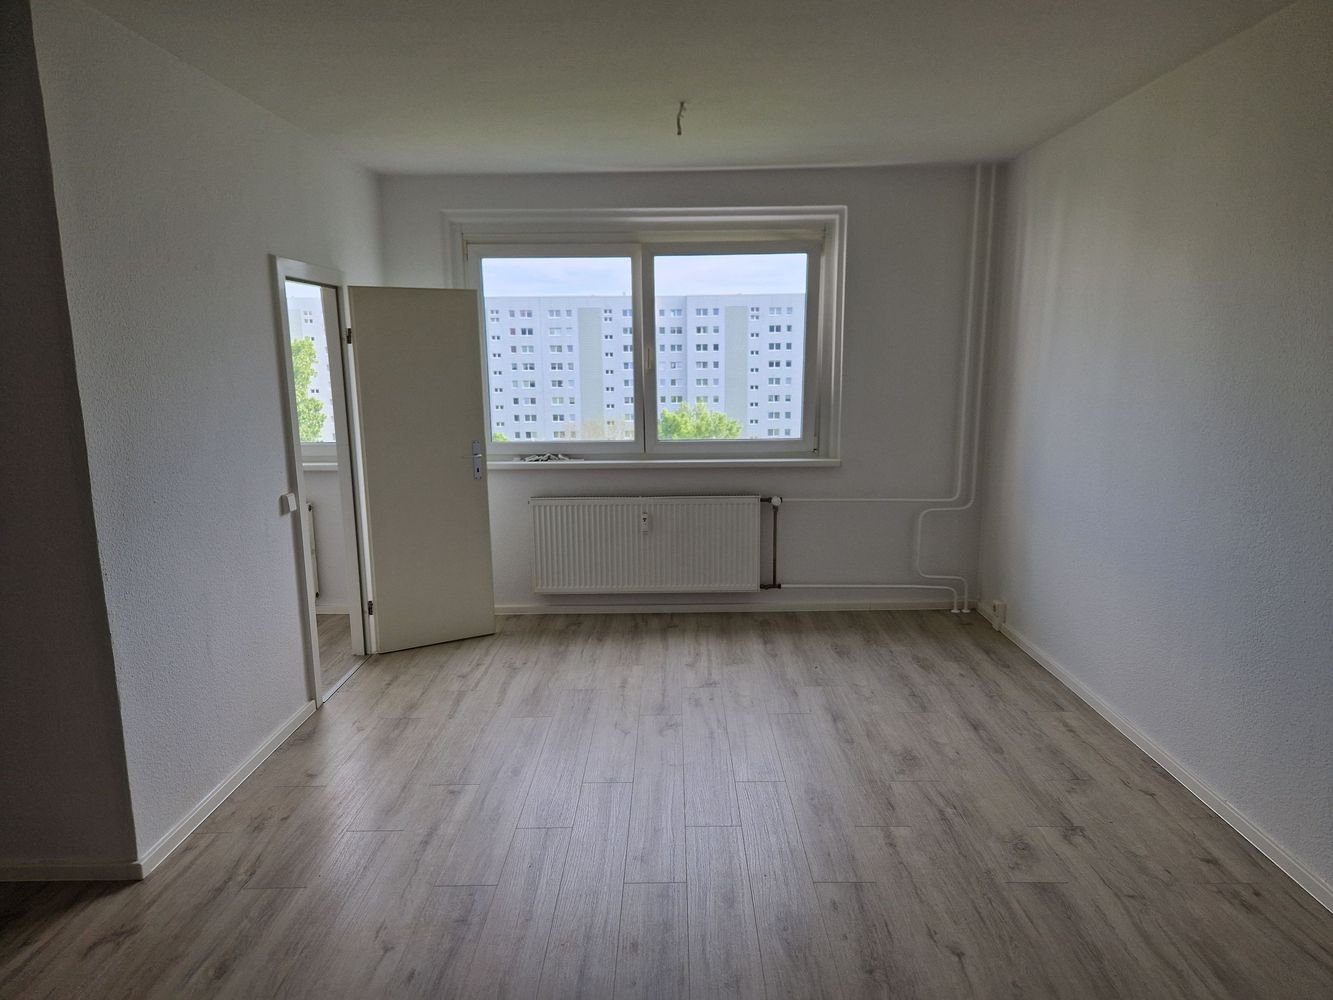 Super geräumiges Apartment mit Wannenbad, Balkon und Aufzug! - Berlin Neu-Hohenschönhausen